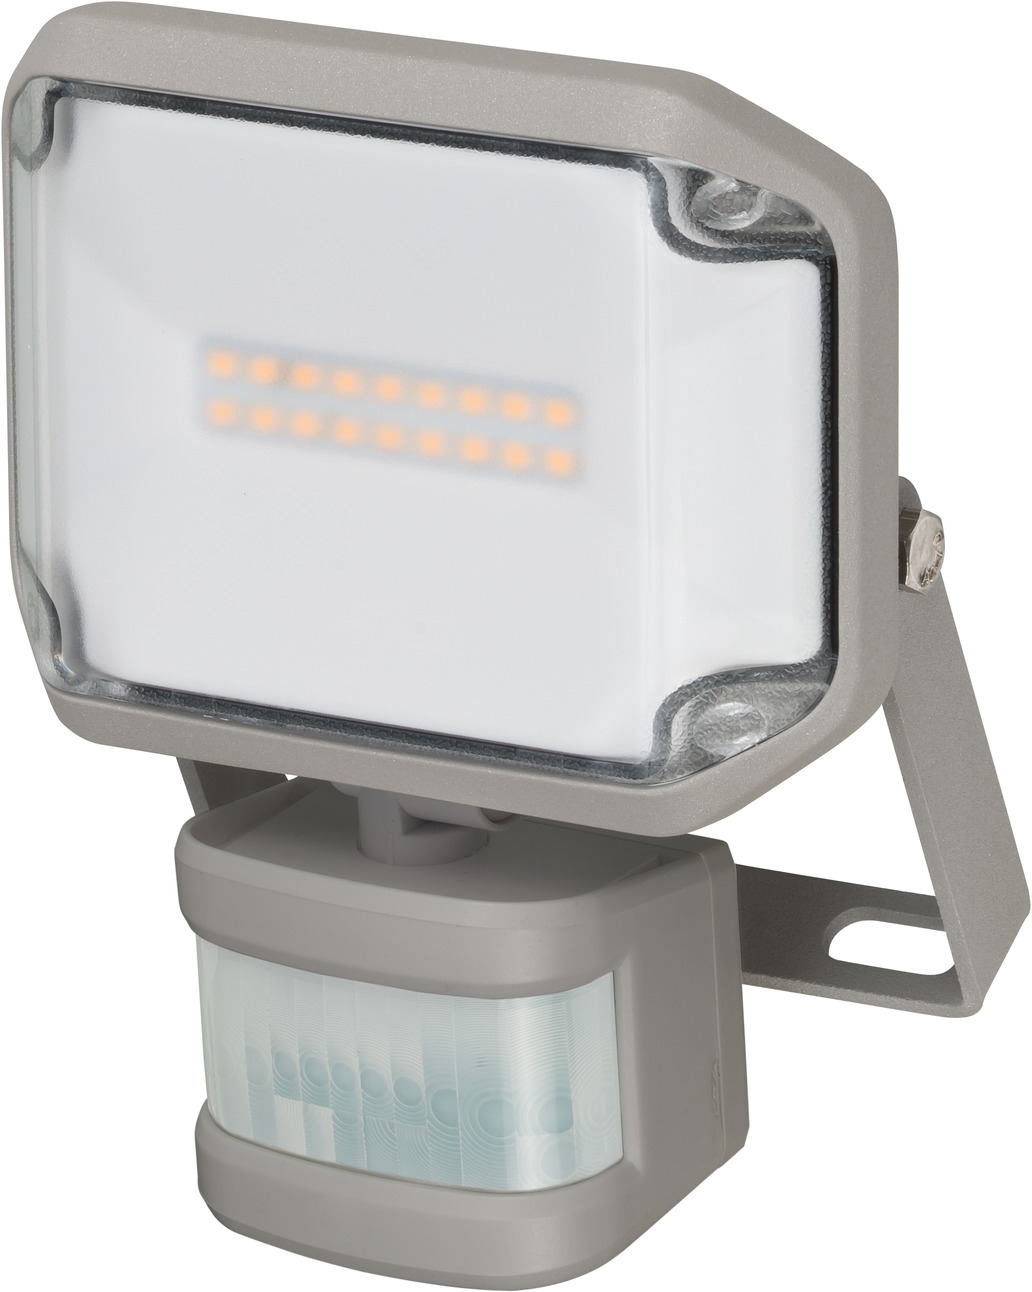 10W Outdoor LED Flut Licht Induktion Infrarot-Motion Sensor weiß/Warm Licht 